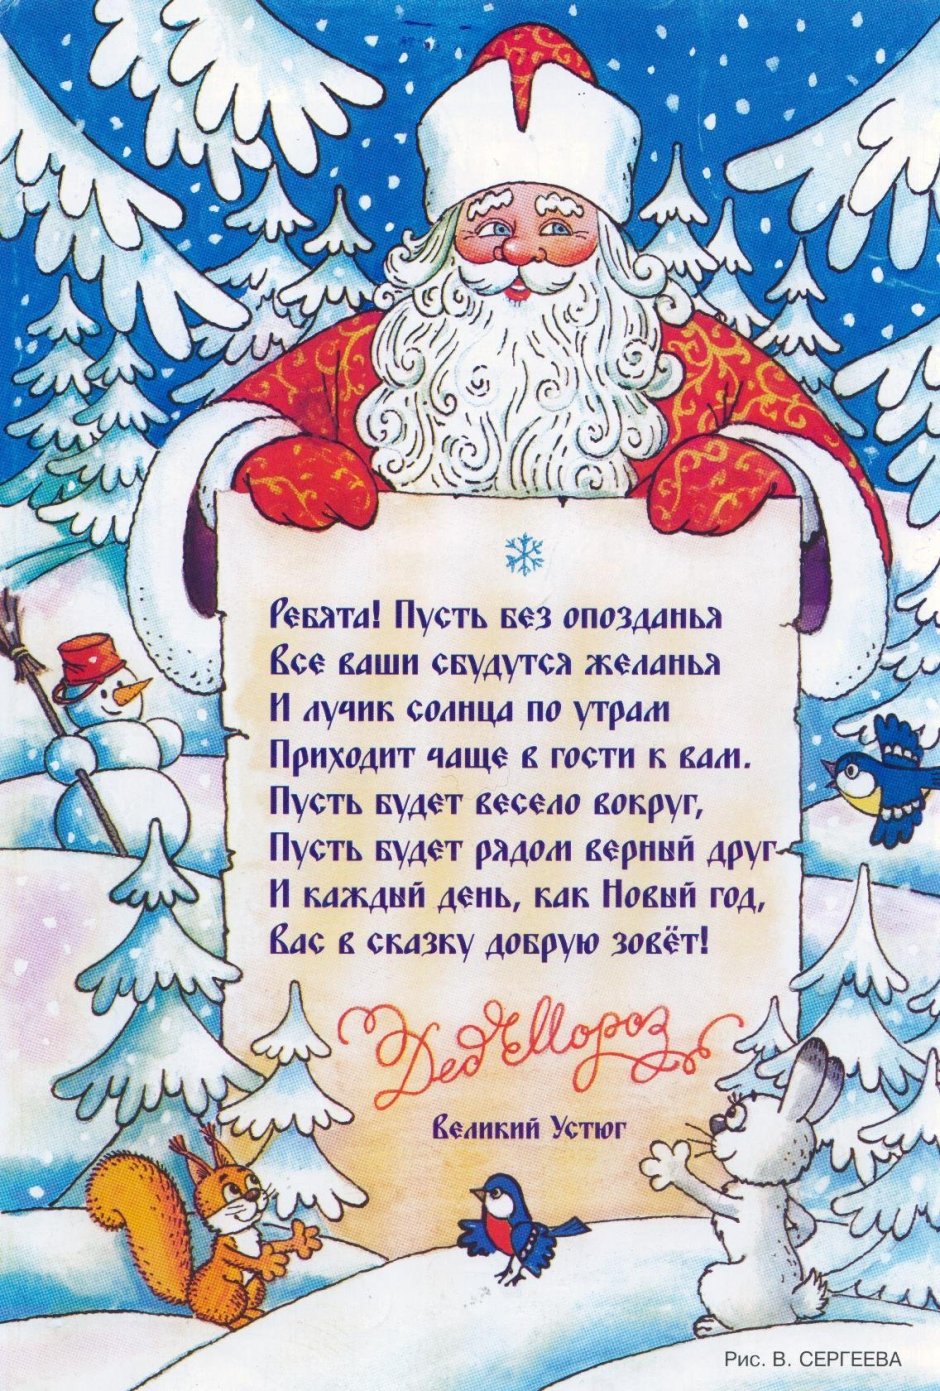 Пожелания деду Морозу на новый год